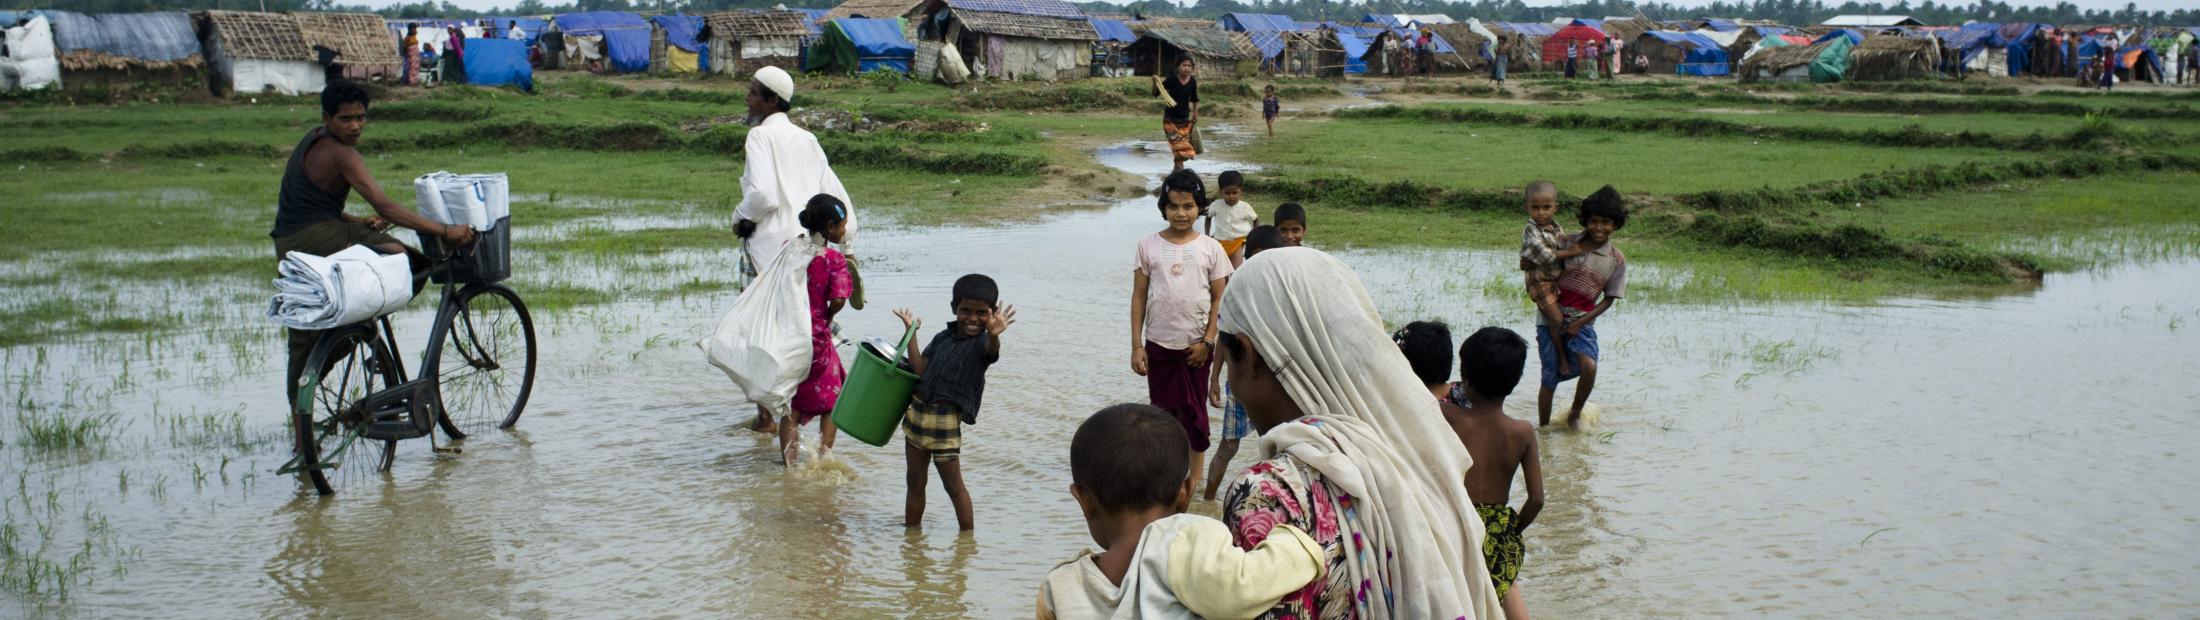 Se necesita comida y refugio urgente según aumenta el desplazamiento en el oeste de Myanmar